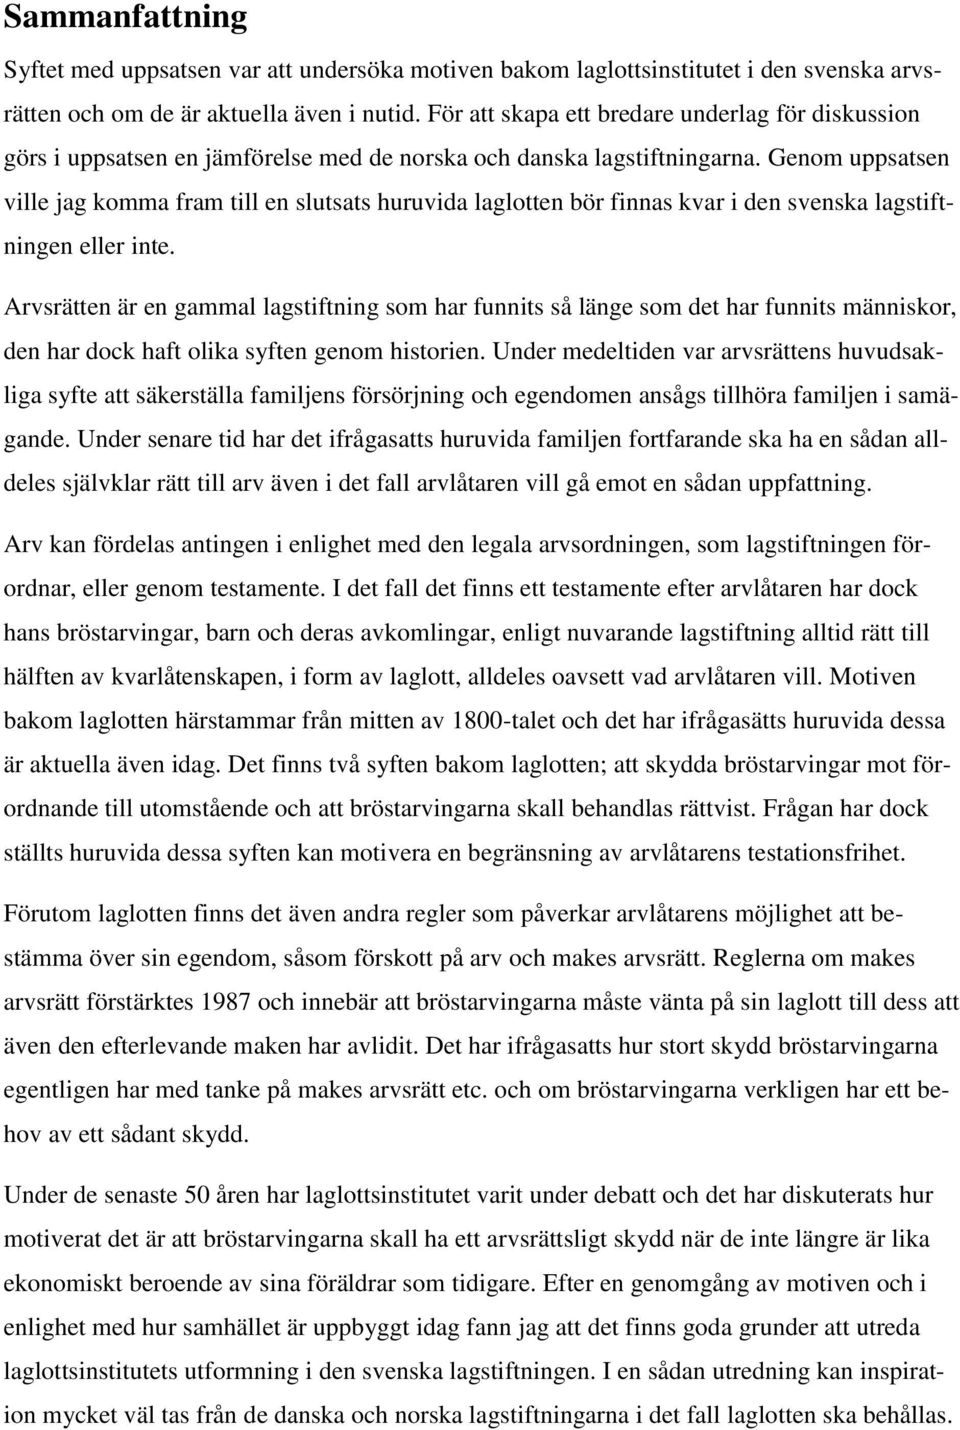 Genom uppsatsen ville jag komma fram till en slutsats huruvida laglotten bör finnas kvar i den svenska lagstiftningen eller inte.